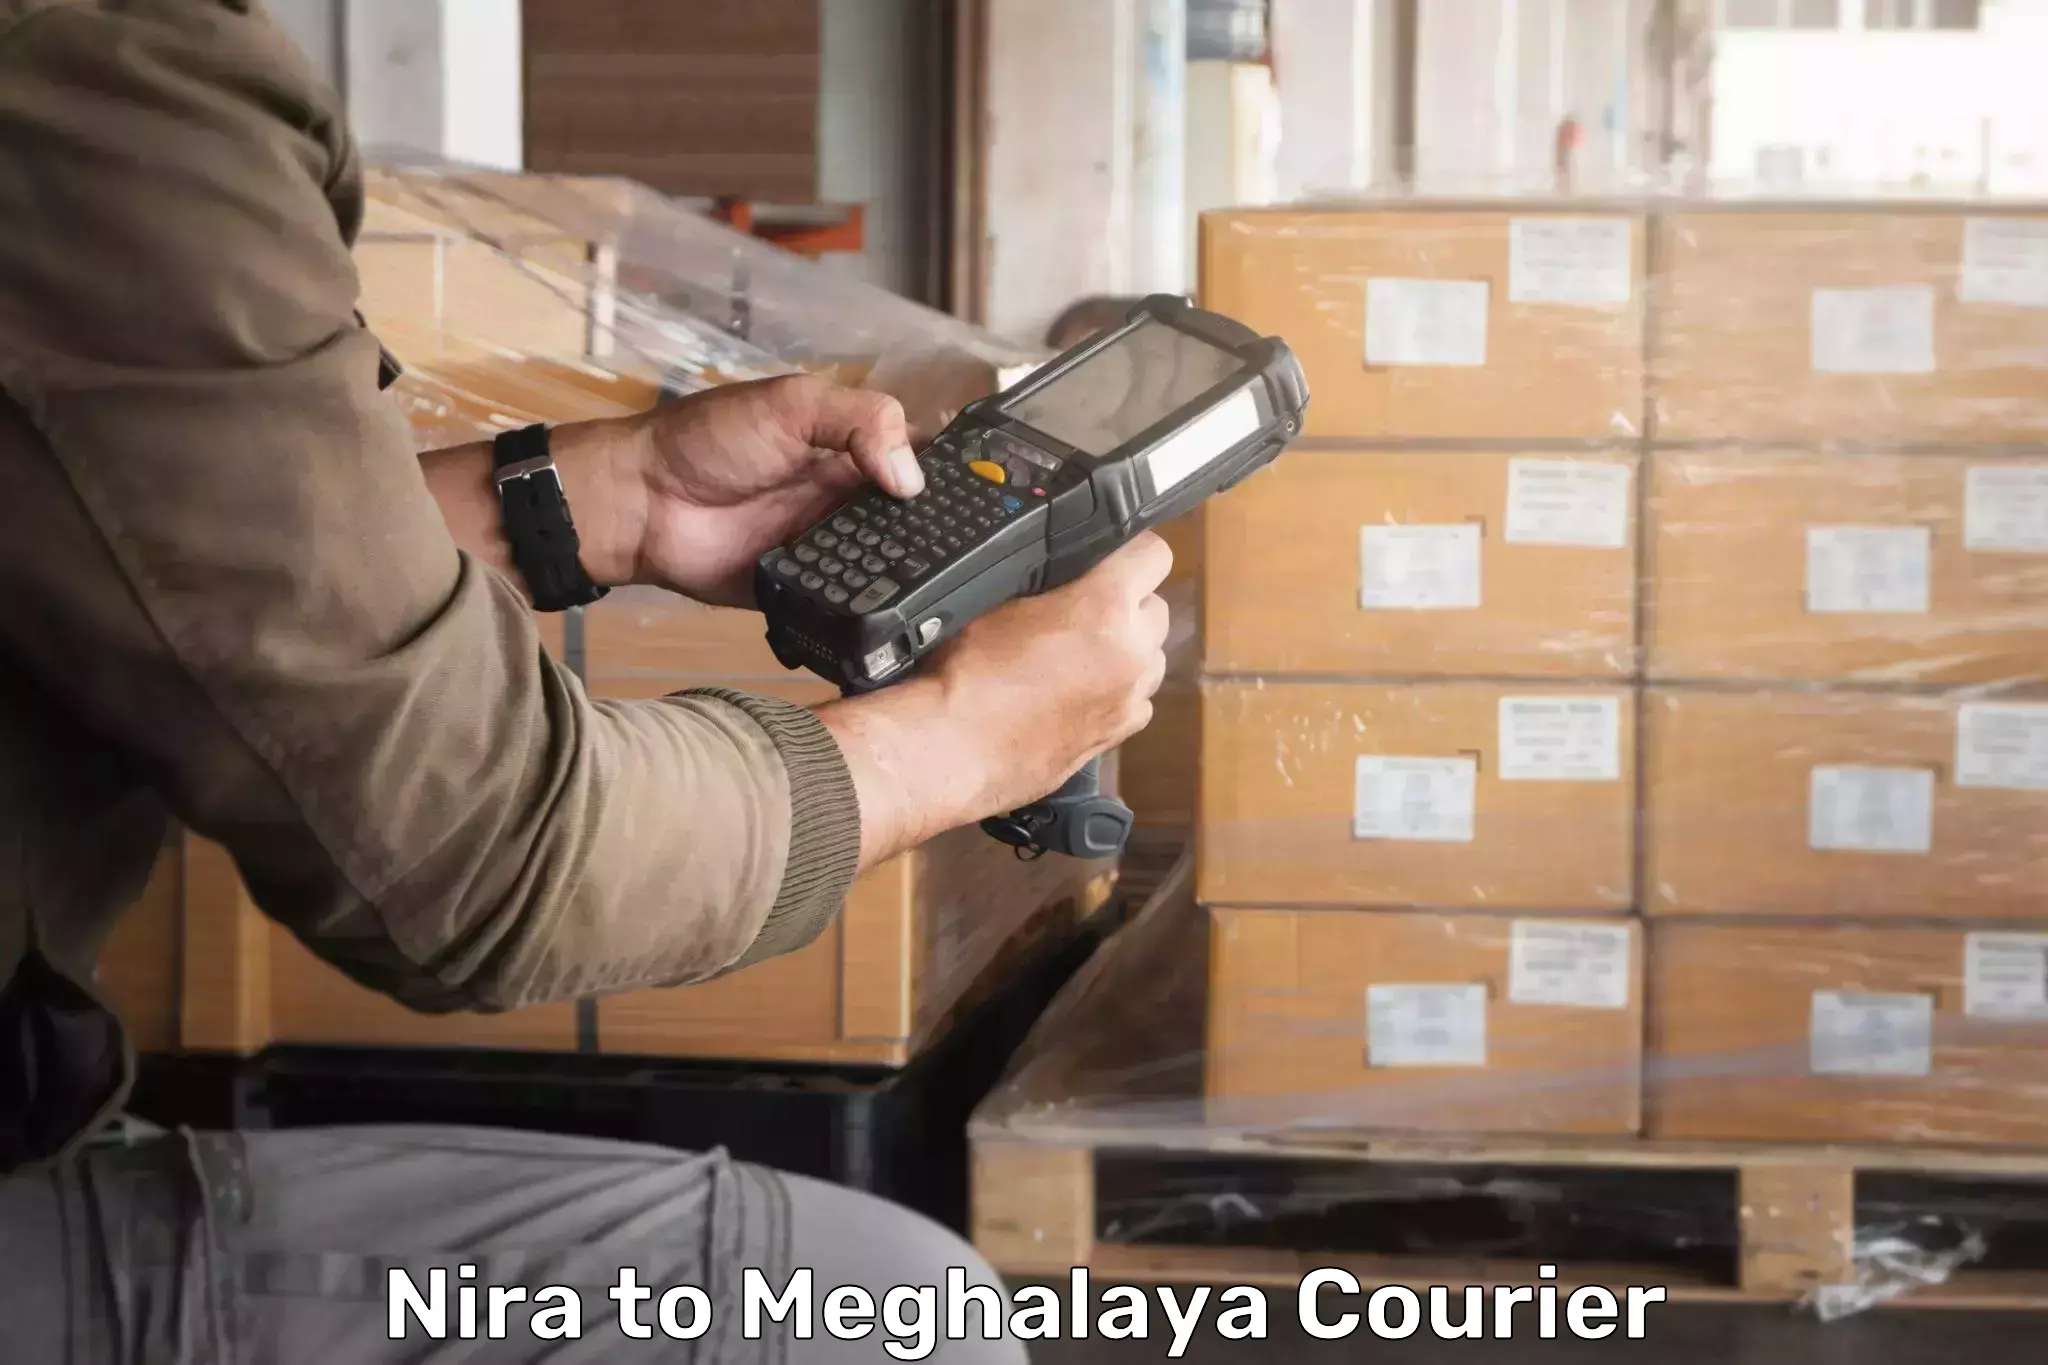 Large package courier Nira to NIT Meghalaya